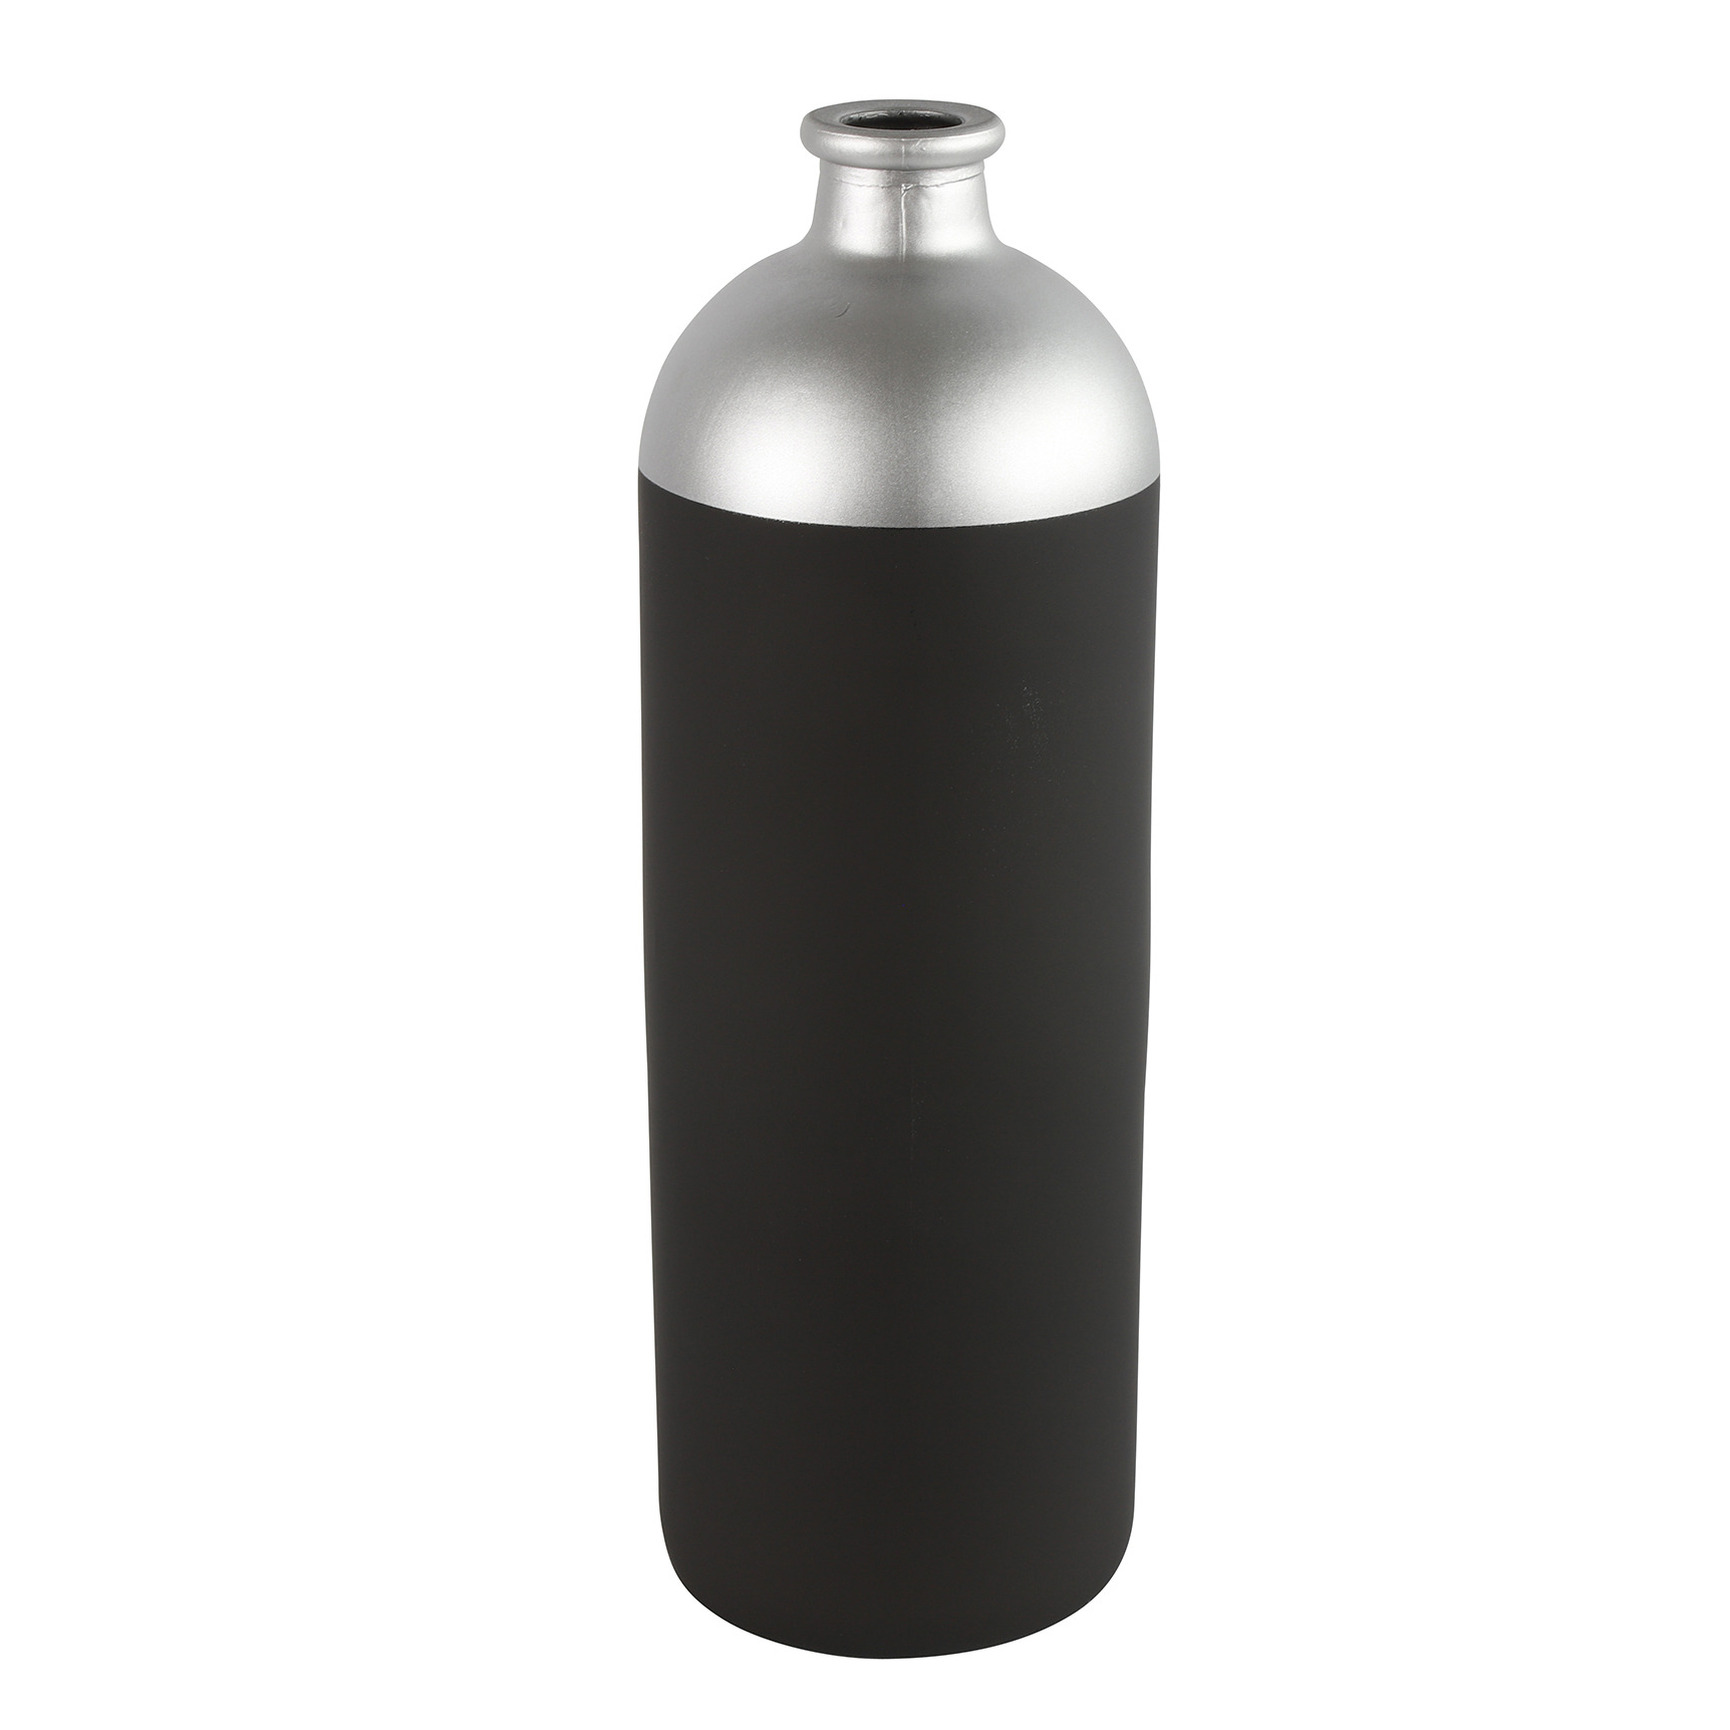 Countryfield Bloemen of deco vaas zwart-zilver glas luxe fles vorm D13 x H41 cm